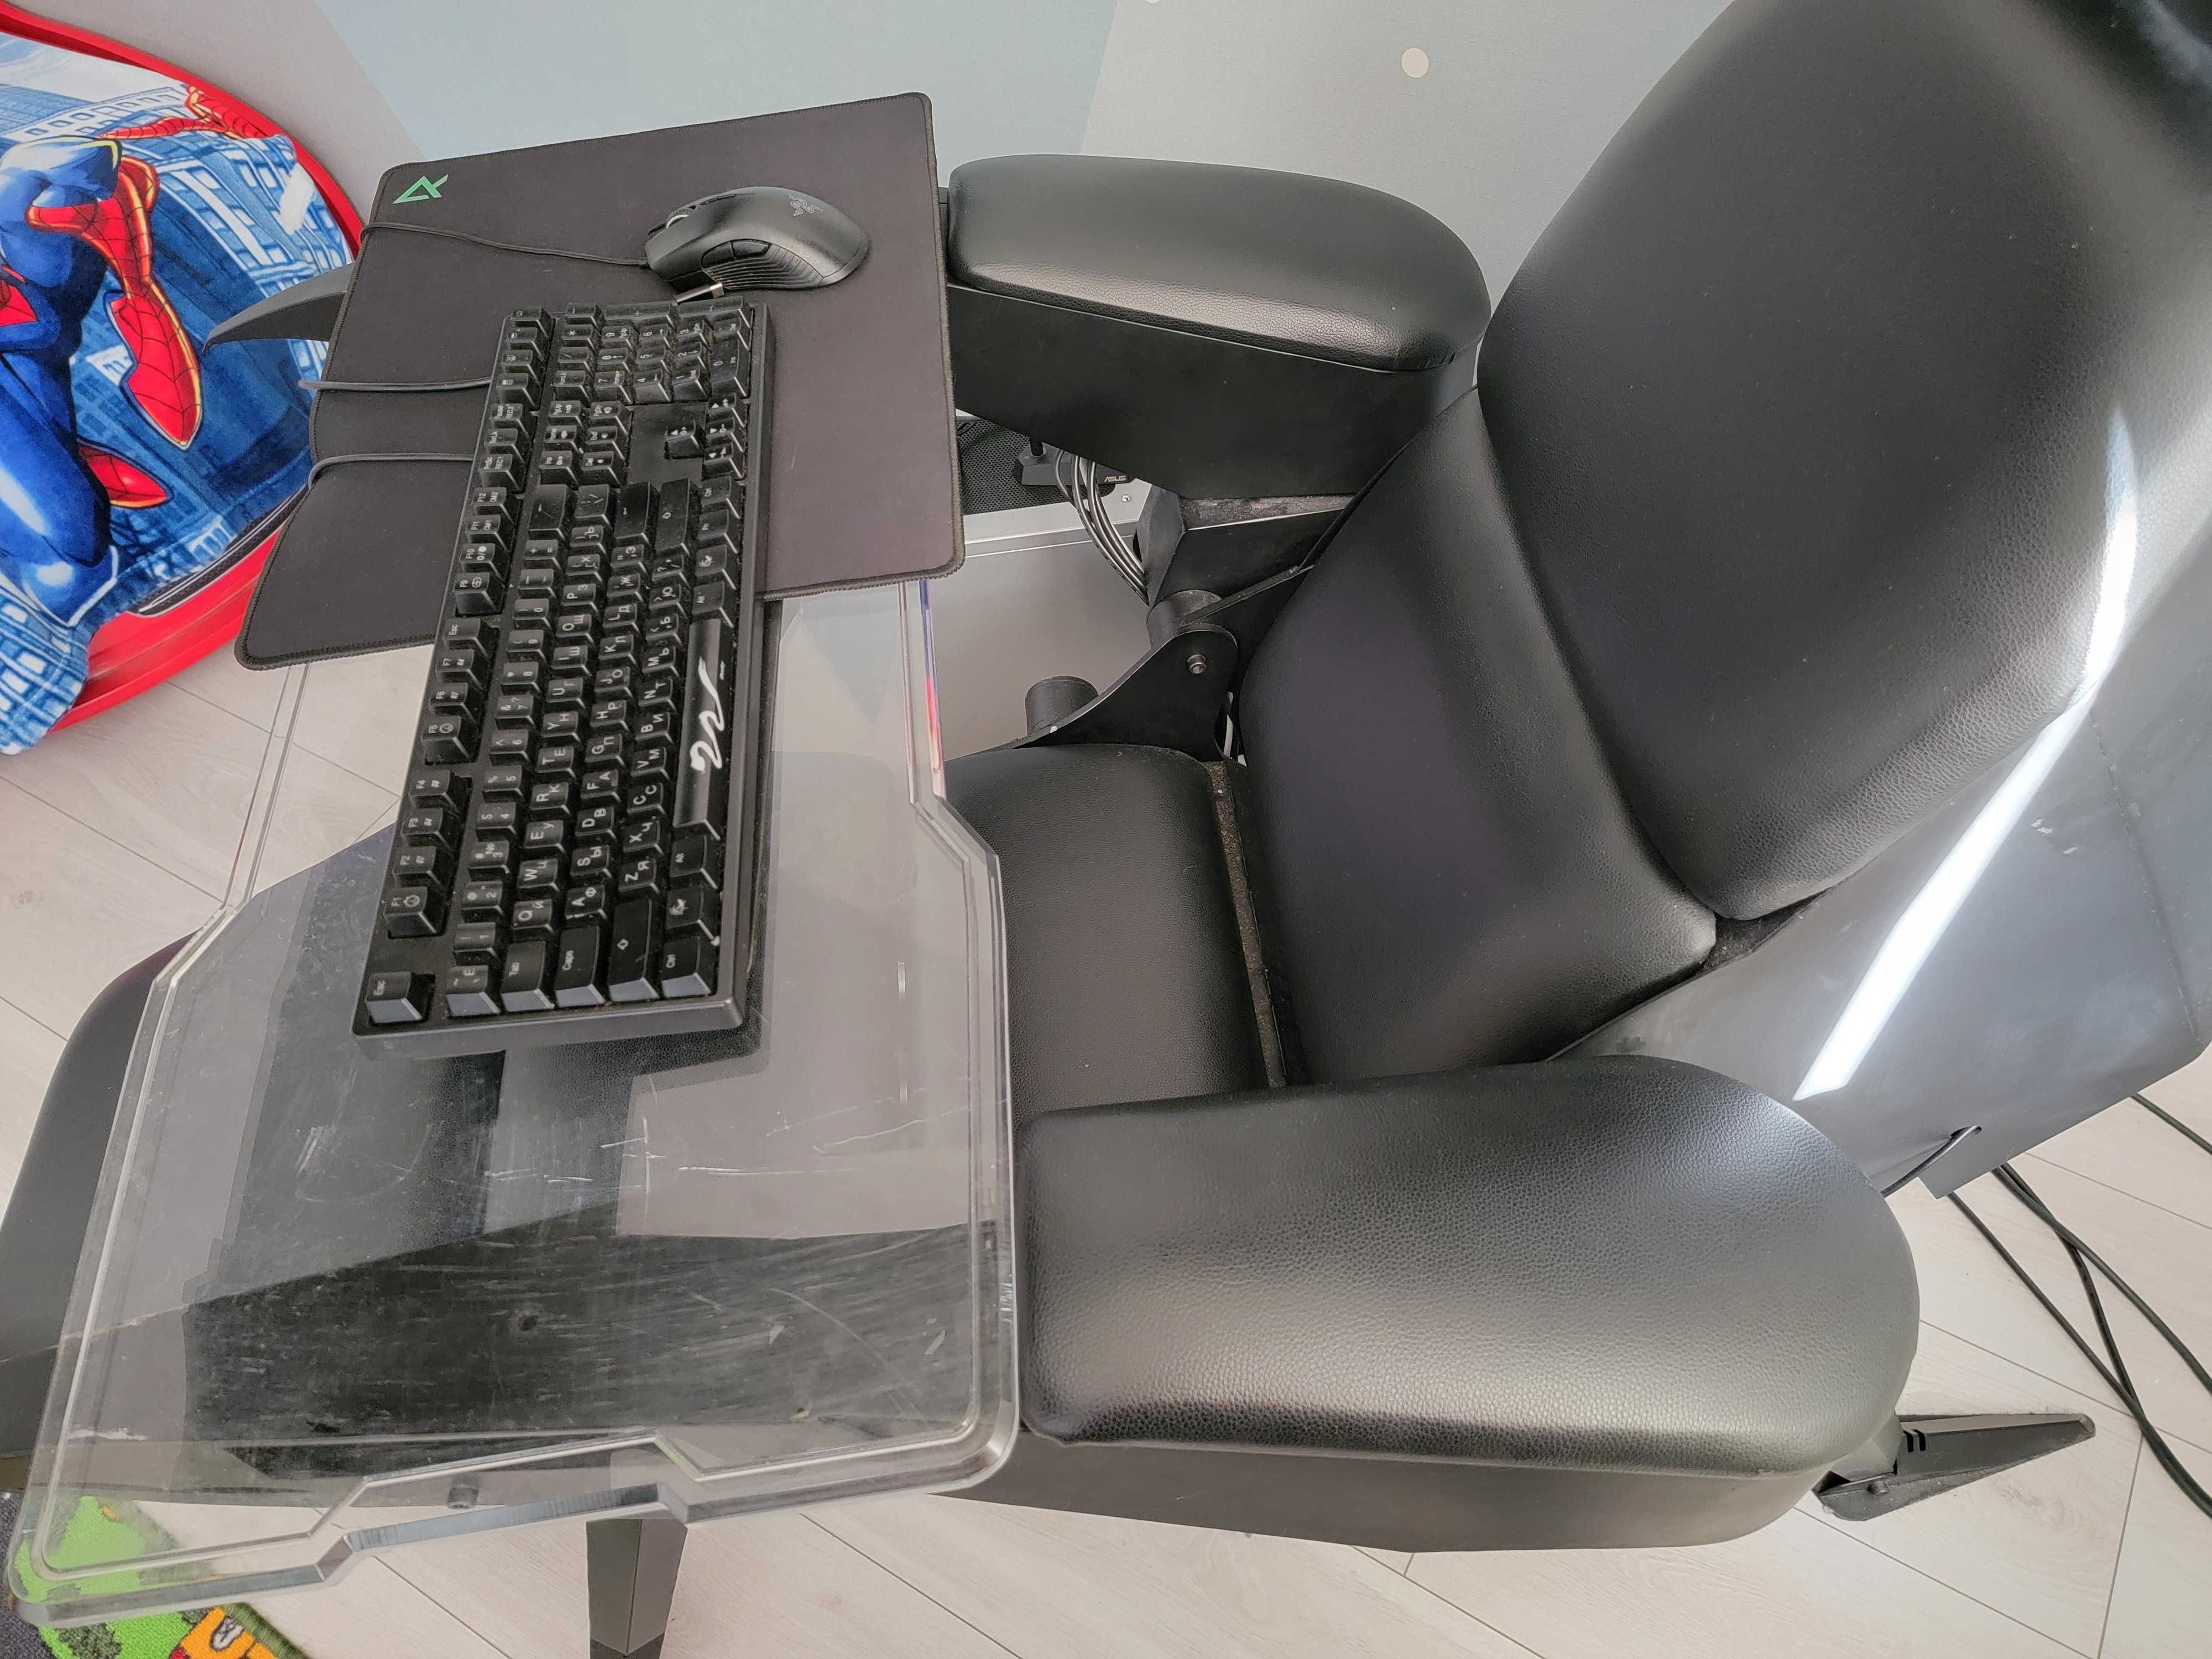 Геймерське крісло кокпіт Скорпіон (Scorpion Cockpit Gaming Chair)